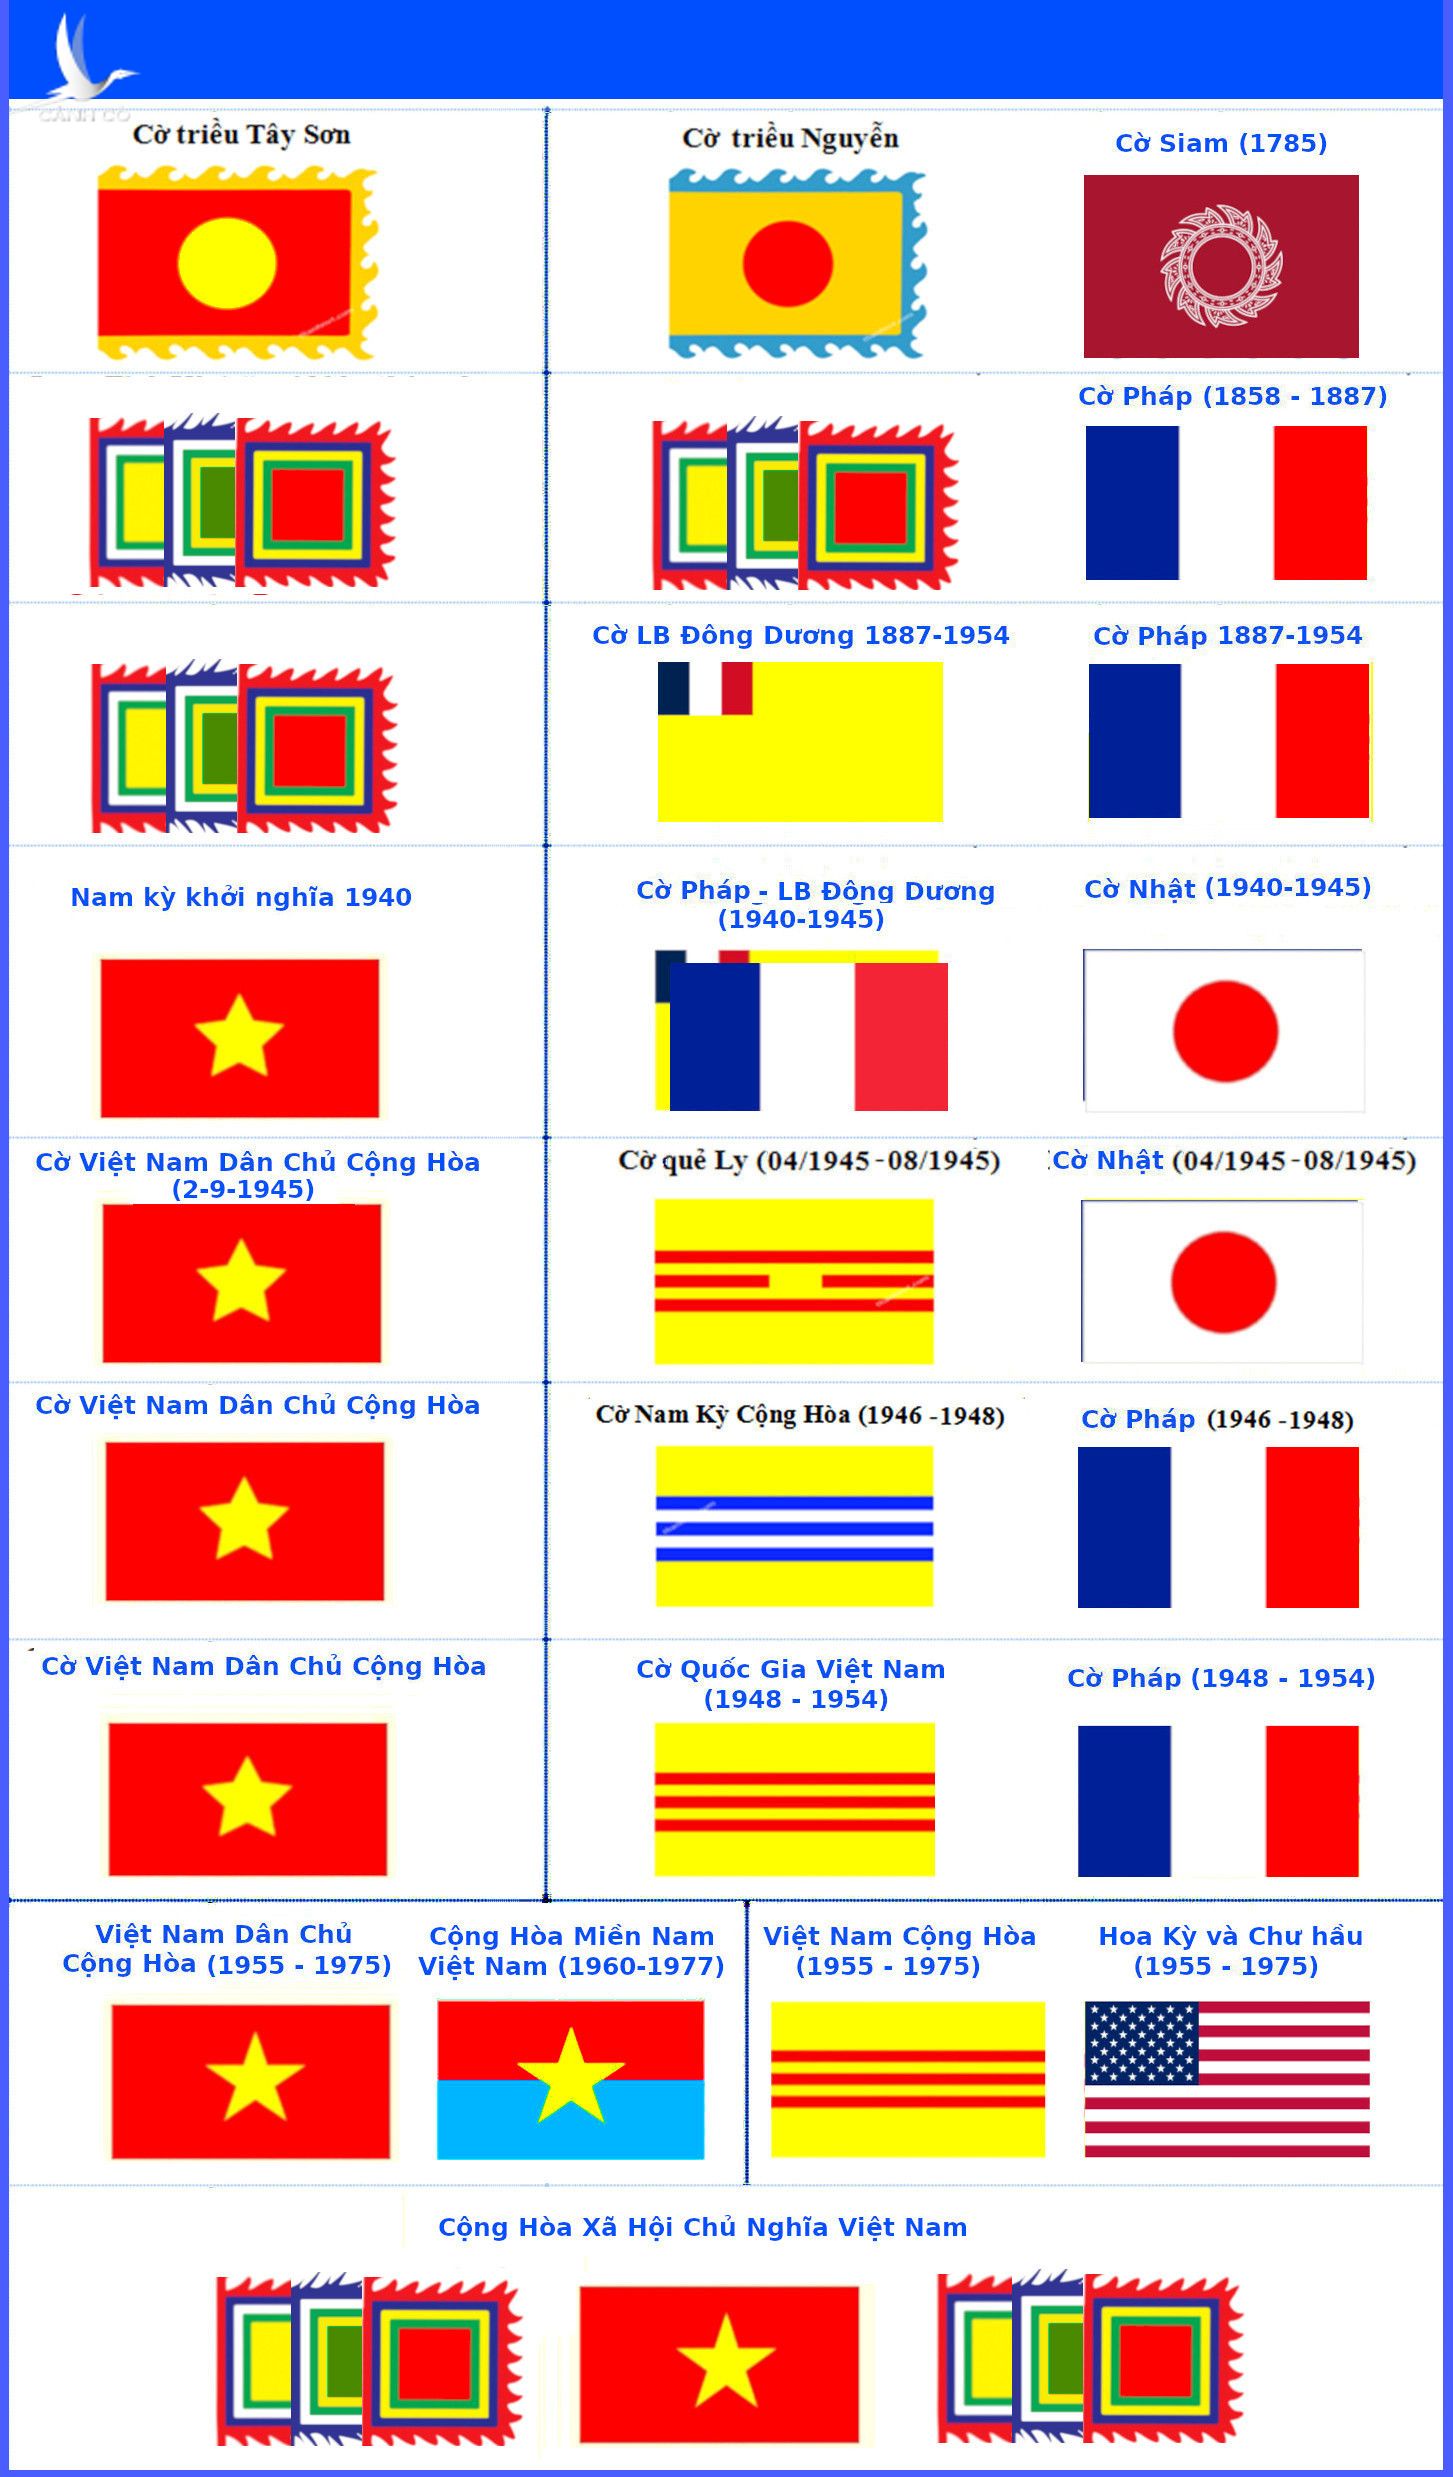 Cờ Vàng Ba Sọc Đỏ thời Nguyễn vẫn giữ được sự uy nghiêm và đẳng cấp của một cờ quốc gia. Một khi đã nhìn thấy nó, ta sẽ nhớ ngay đến vẻ đẹp cổ điển và sức mạnh lịch sử của đất nước Việt Nam. Đó là một biểu tượng đầy ý nghĩa mà ai cũng nên tìm hiểu.